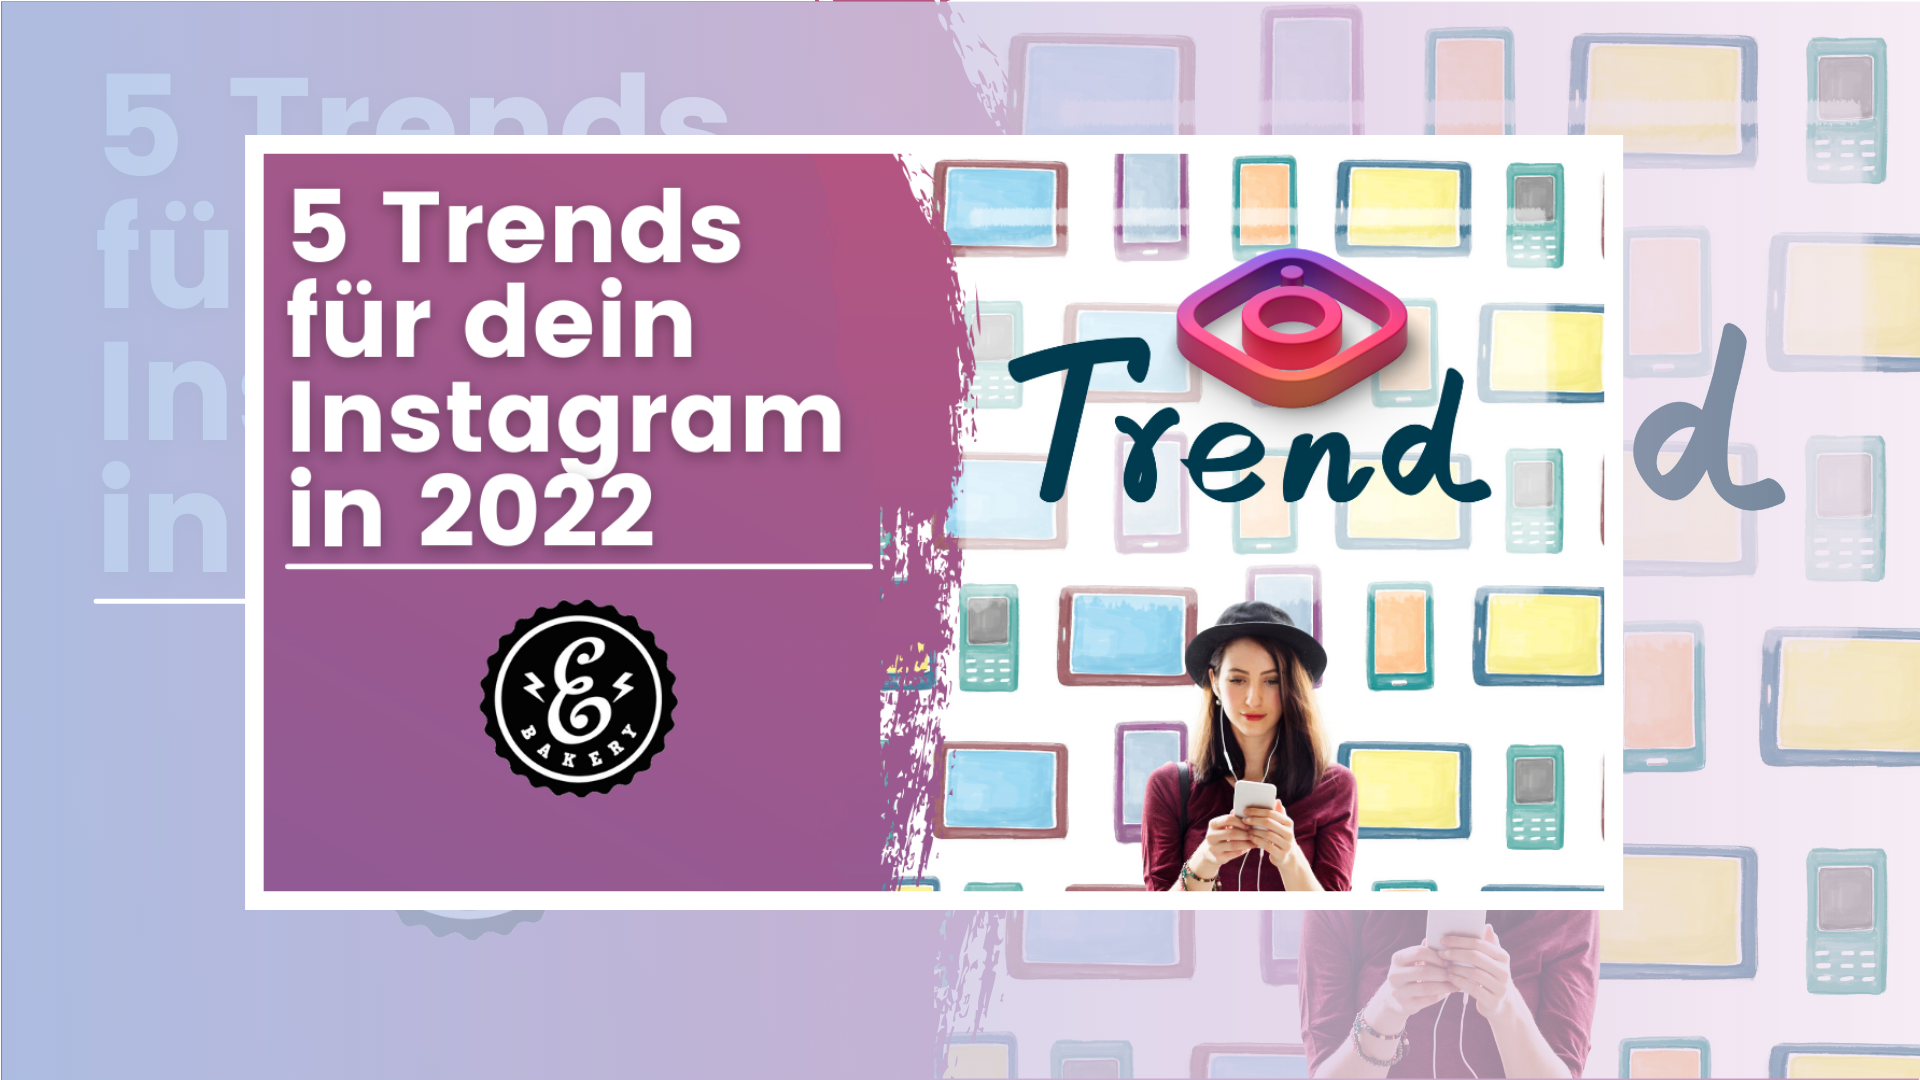 5 Instagram-Trends für 2022 -Trends für eine erfolgreiche Instagram Strategie